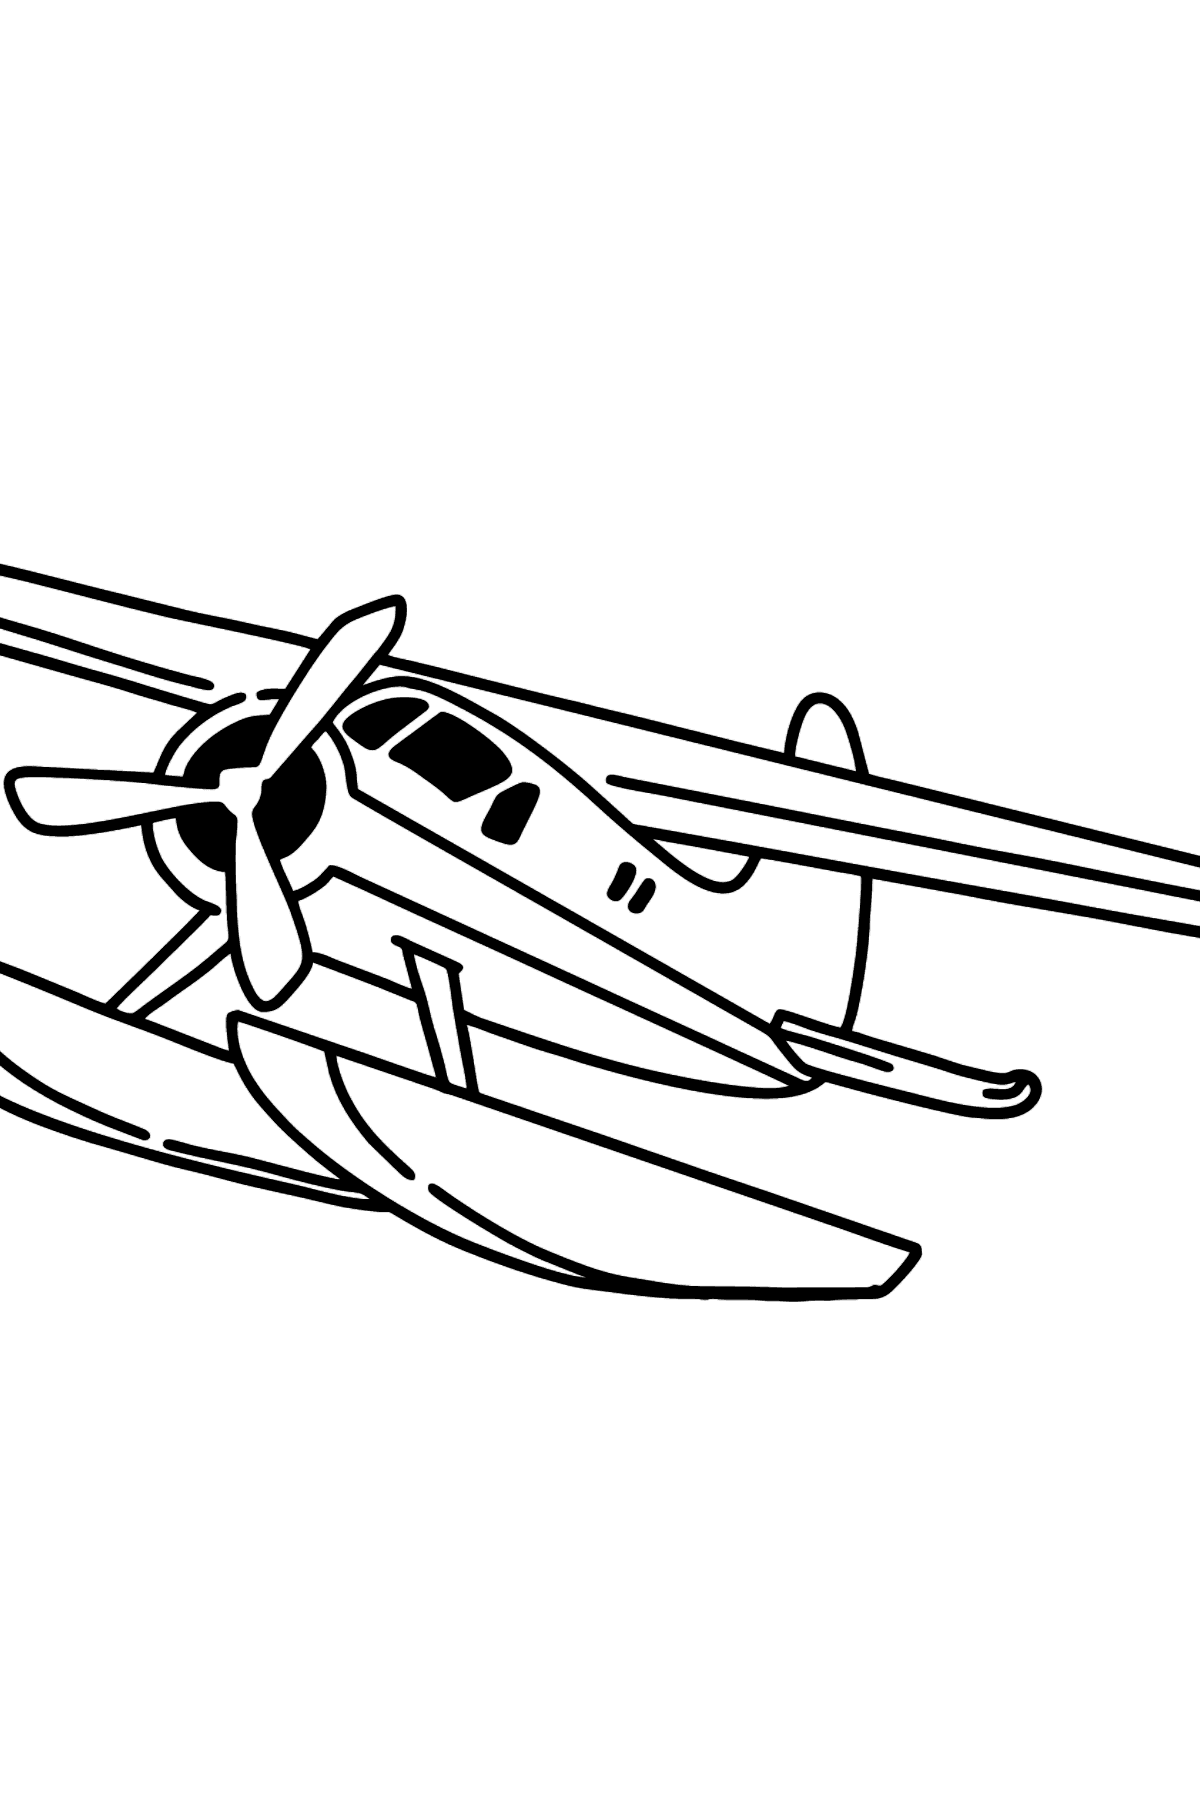 Desenho para colorir do Jet Airplane BE-200 - Imagens para Colorir para Crianças